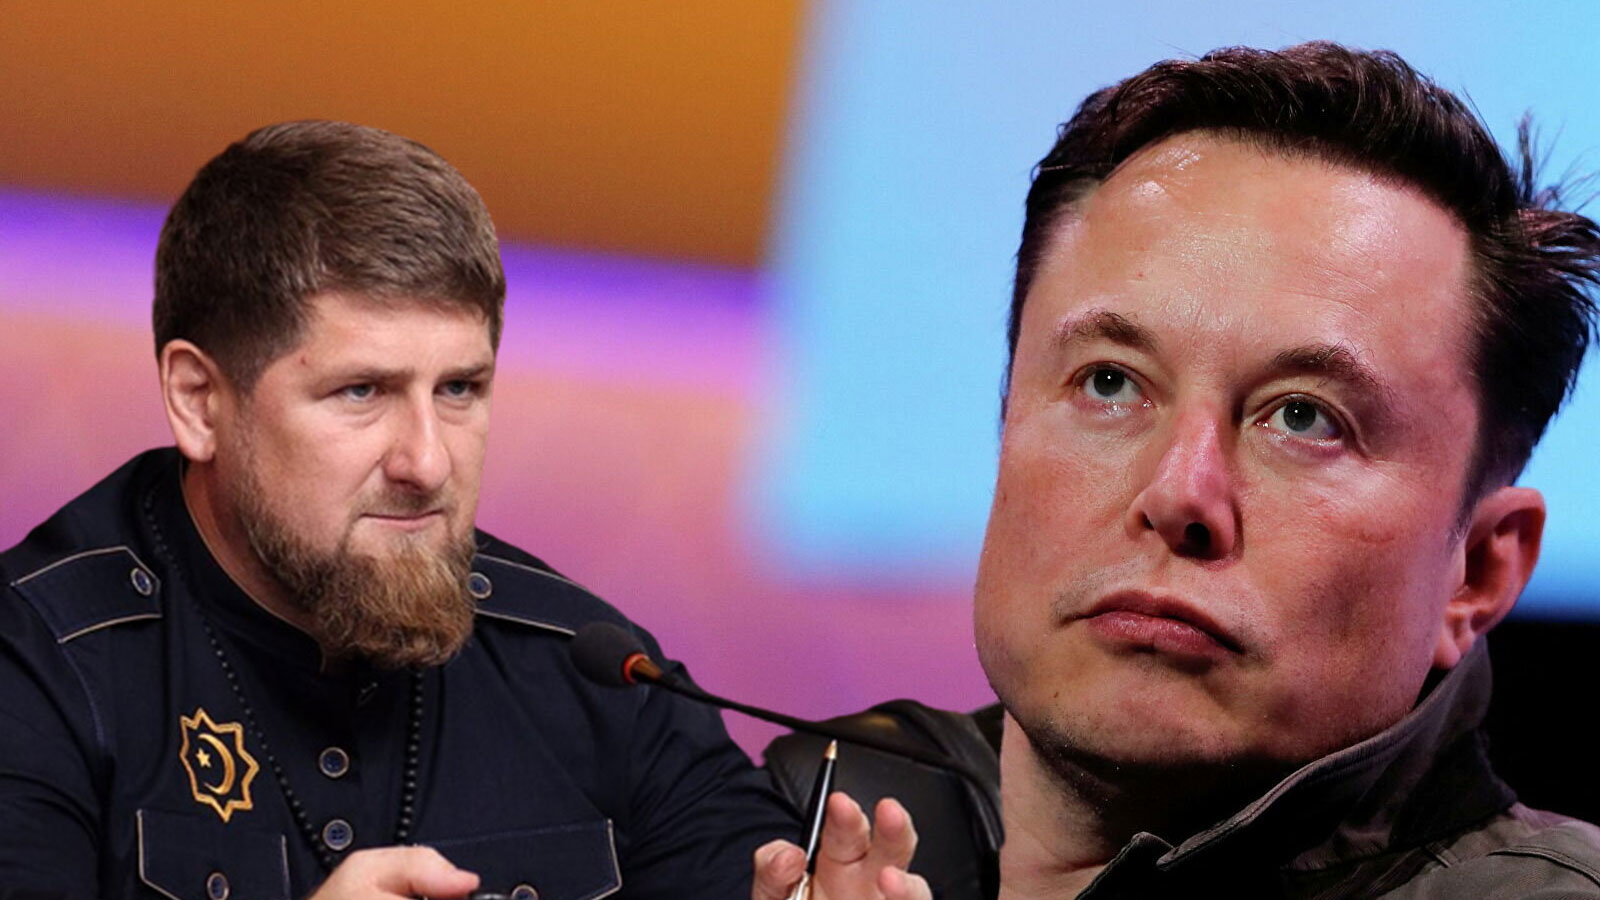 Çeçen lider Kadirov, Elon Musk’ı tehdit etti: Gücünü Putin’le kıyaslama